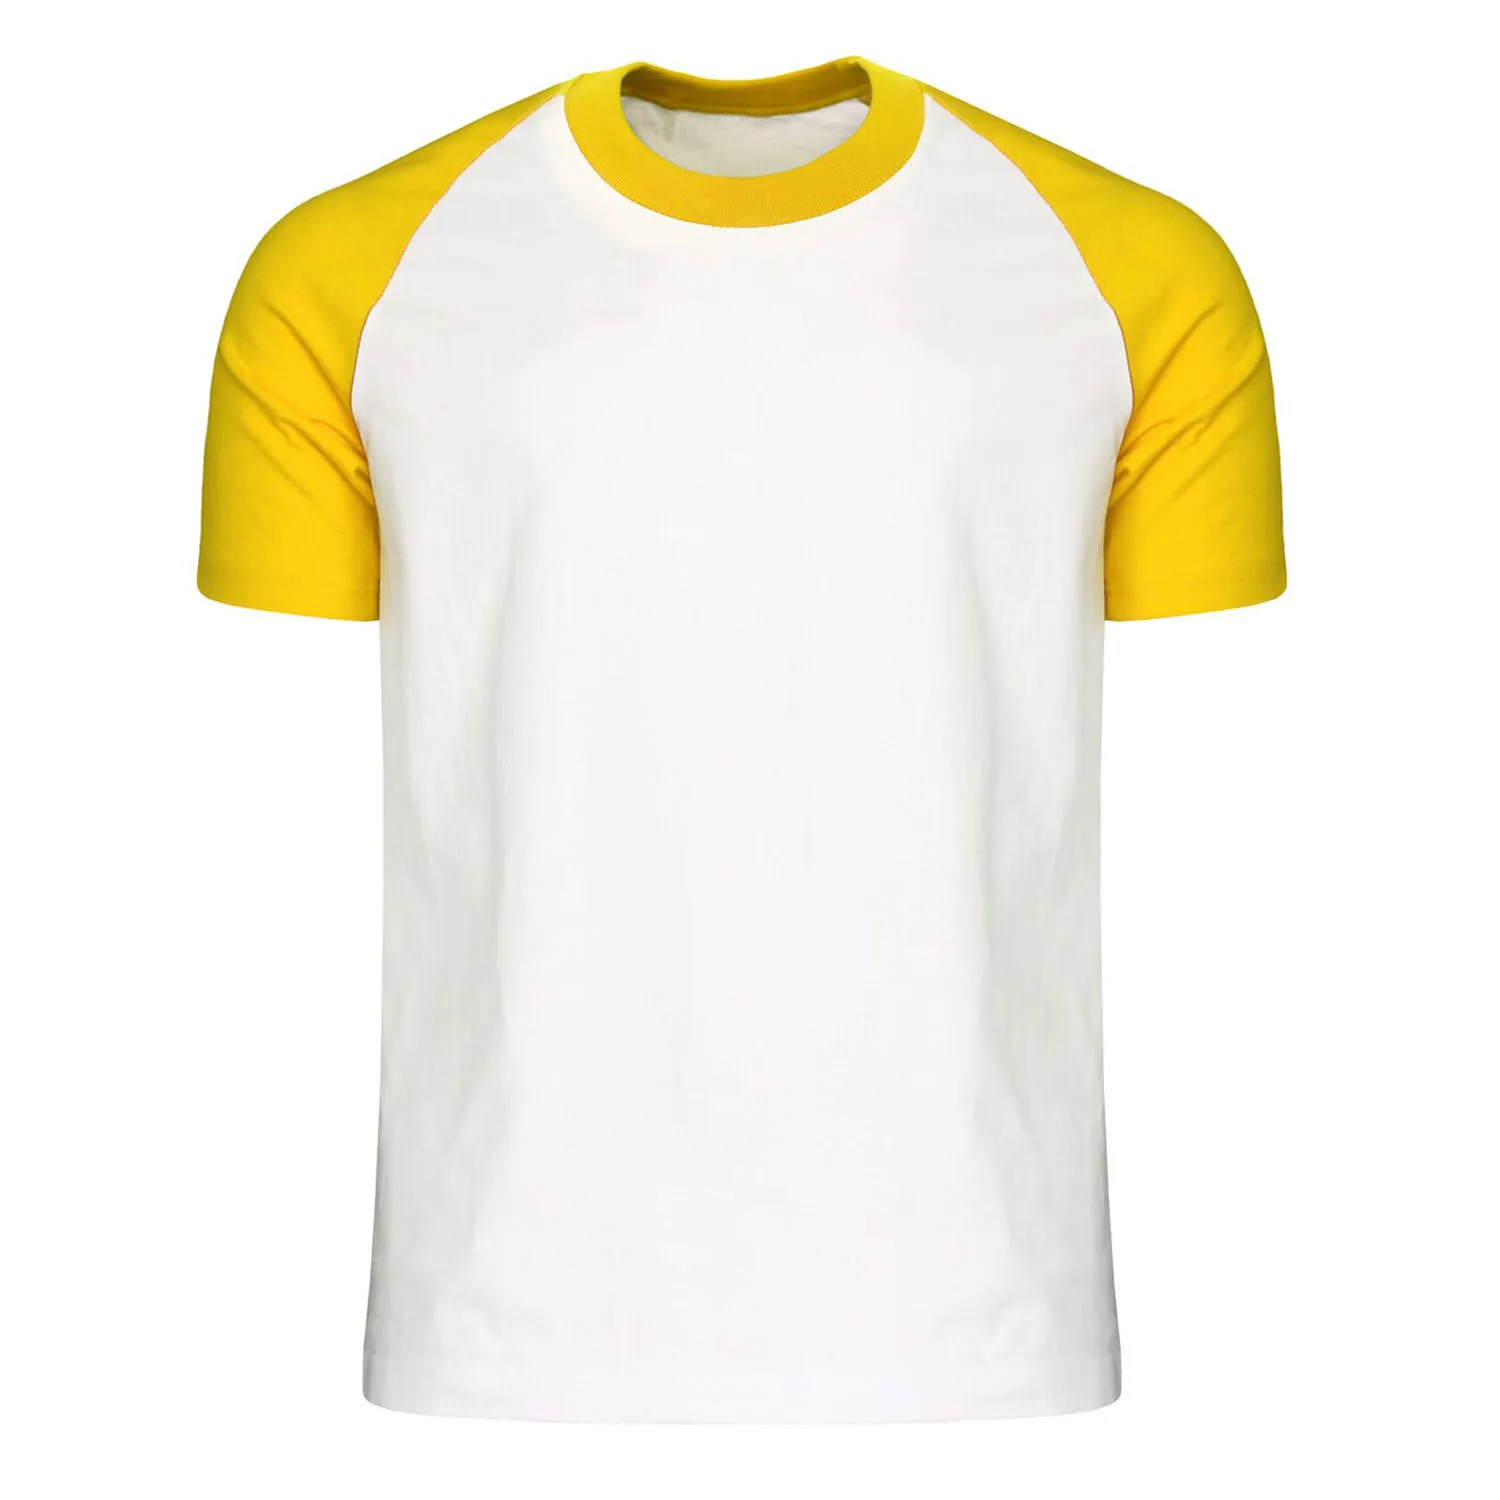 Großhandel einfarbig Wettbewerbspreis Polyester einfarbig Hemd im Großhandel Preis mit bedruckter Farbe und Logo